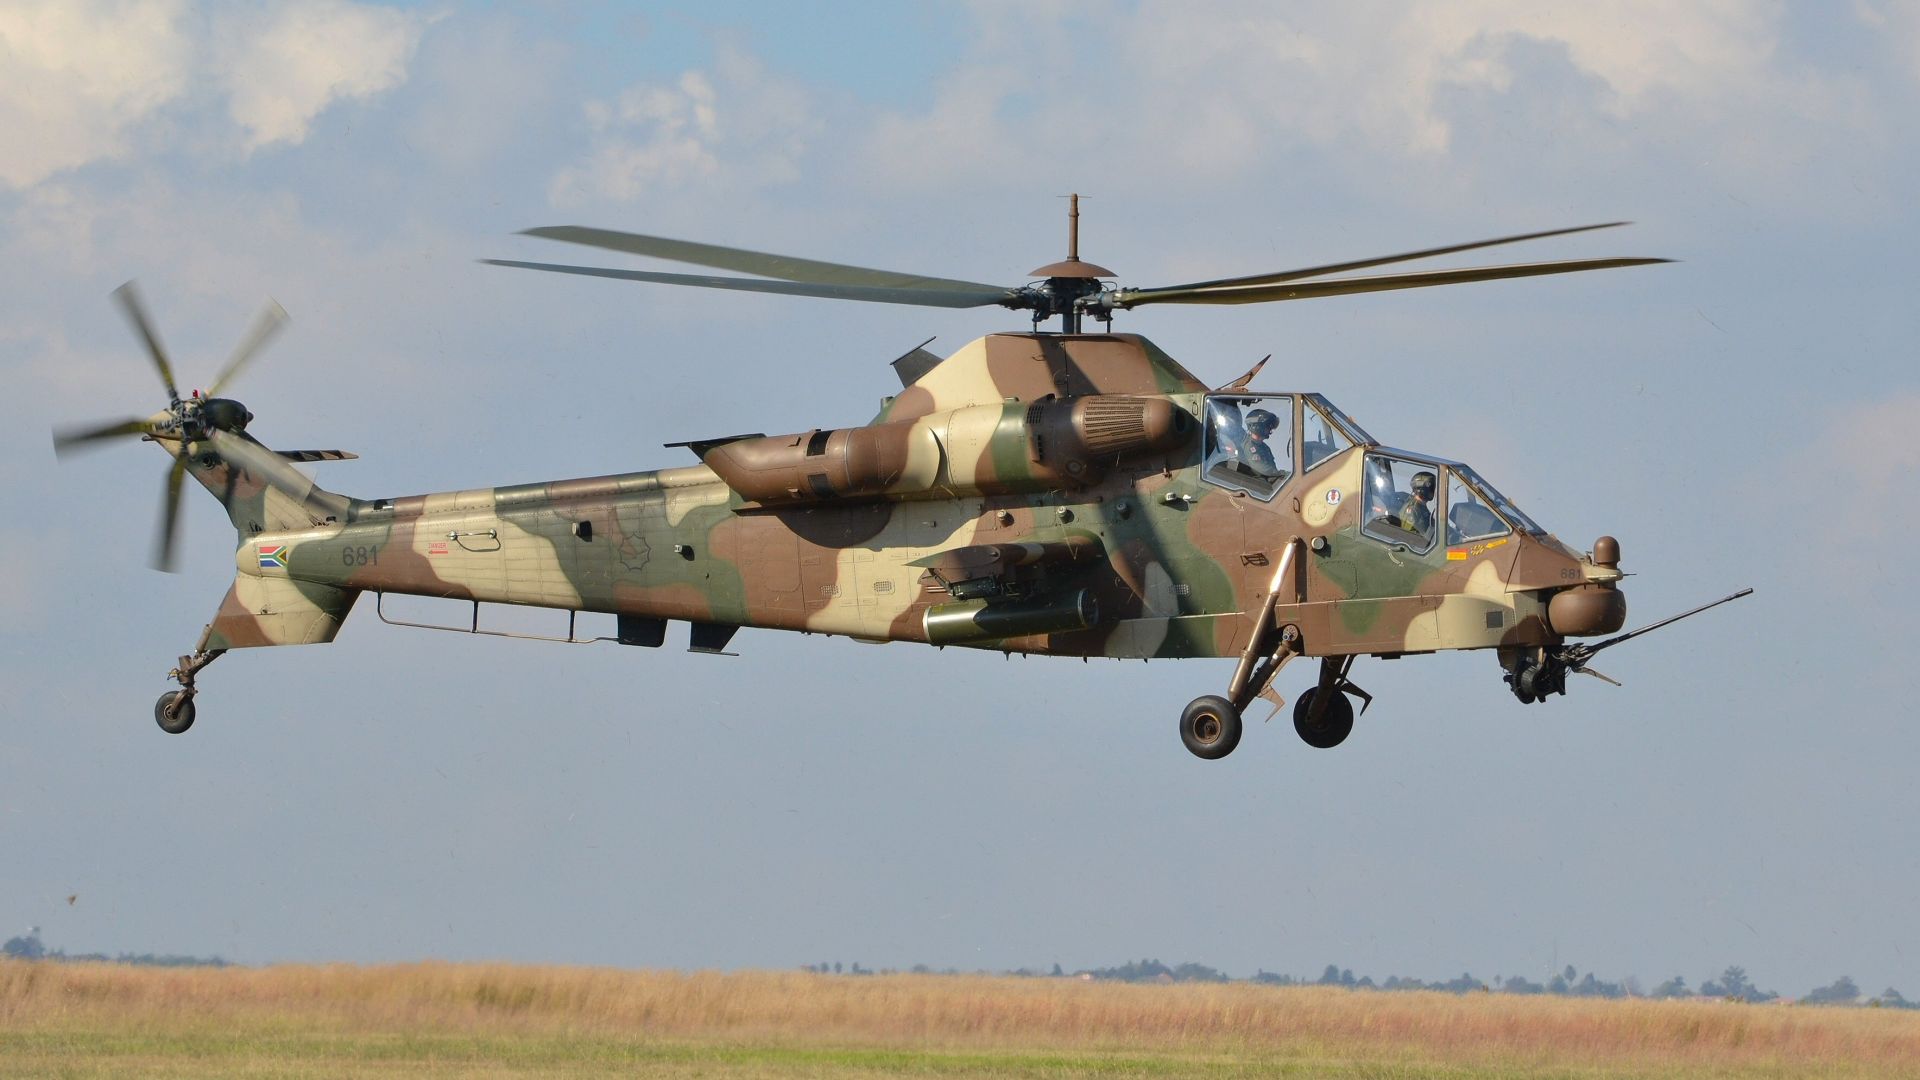 Денел АШ-2 Руйвелк, ударный вертолёт, ВВС ЮАР, Denel AH-2 Rooivalk, attack helicopter, South African Air Force (horizontal)